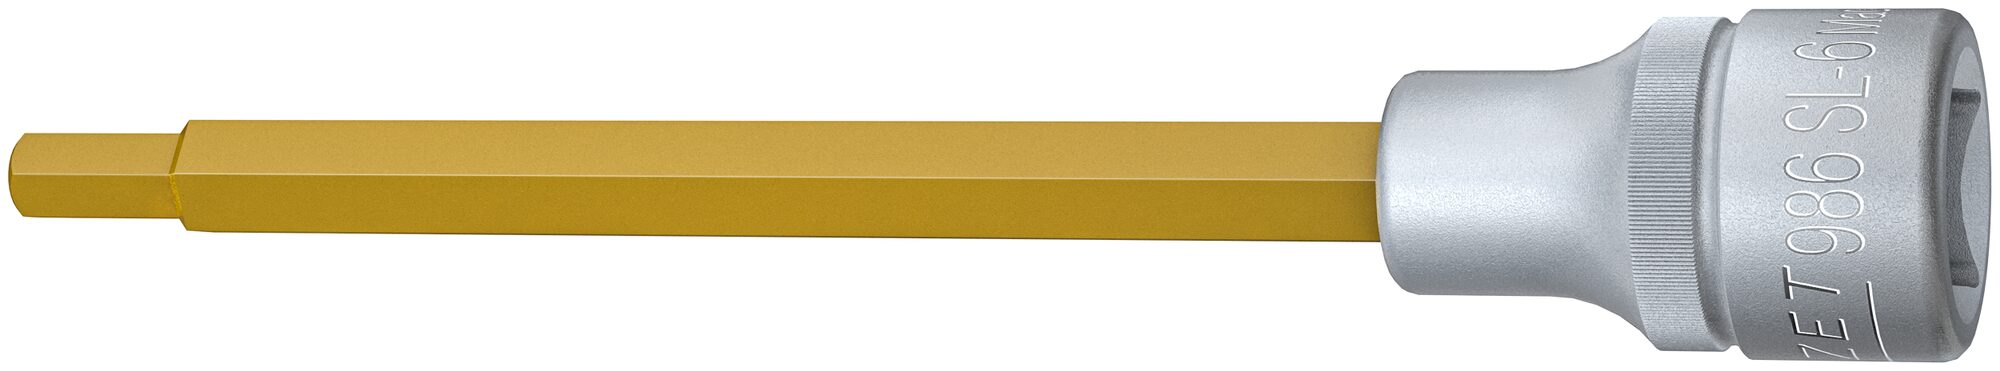 HAZET Schraubendreher-Steckschlüsseleinsatz 986SL-6 · Vierkant hohl 12,5 mm (1/2 Zoll) · Innen Sechskant Profil · 6 mm